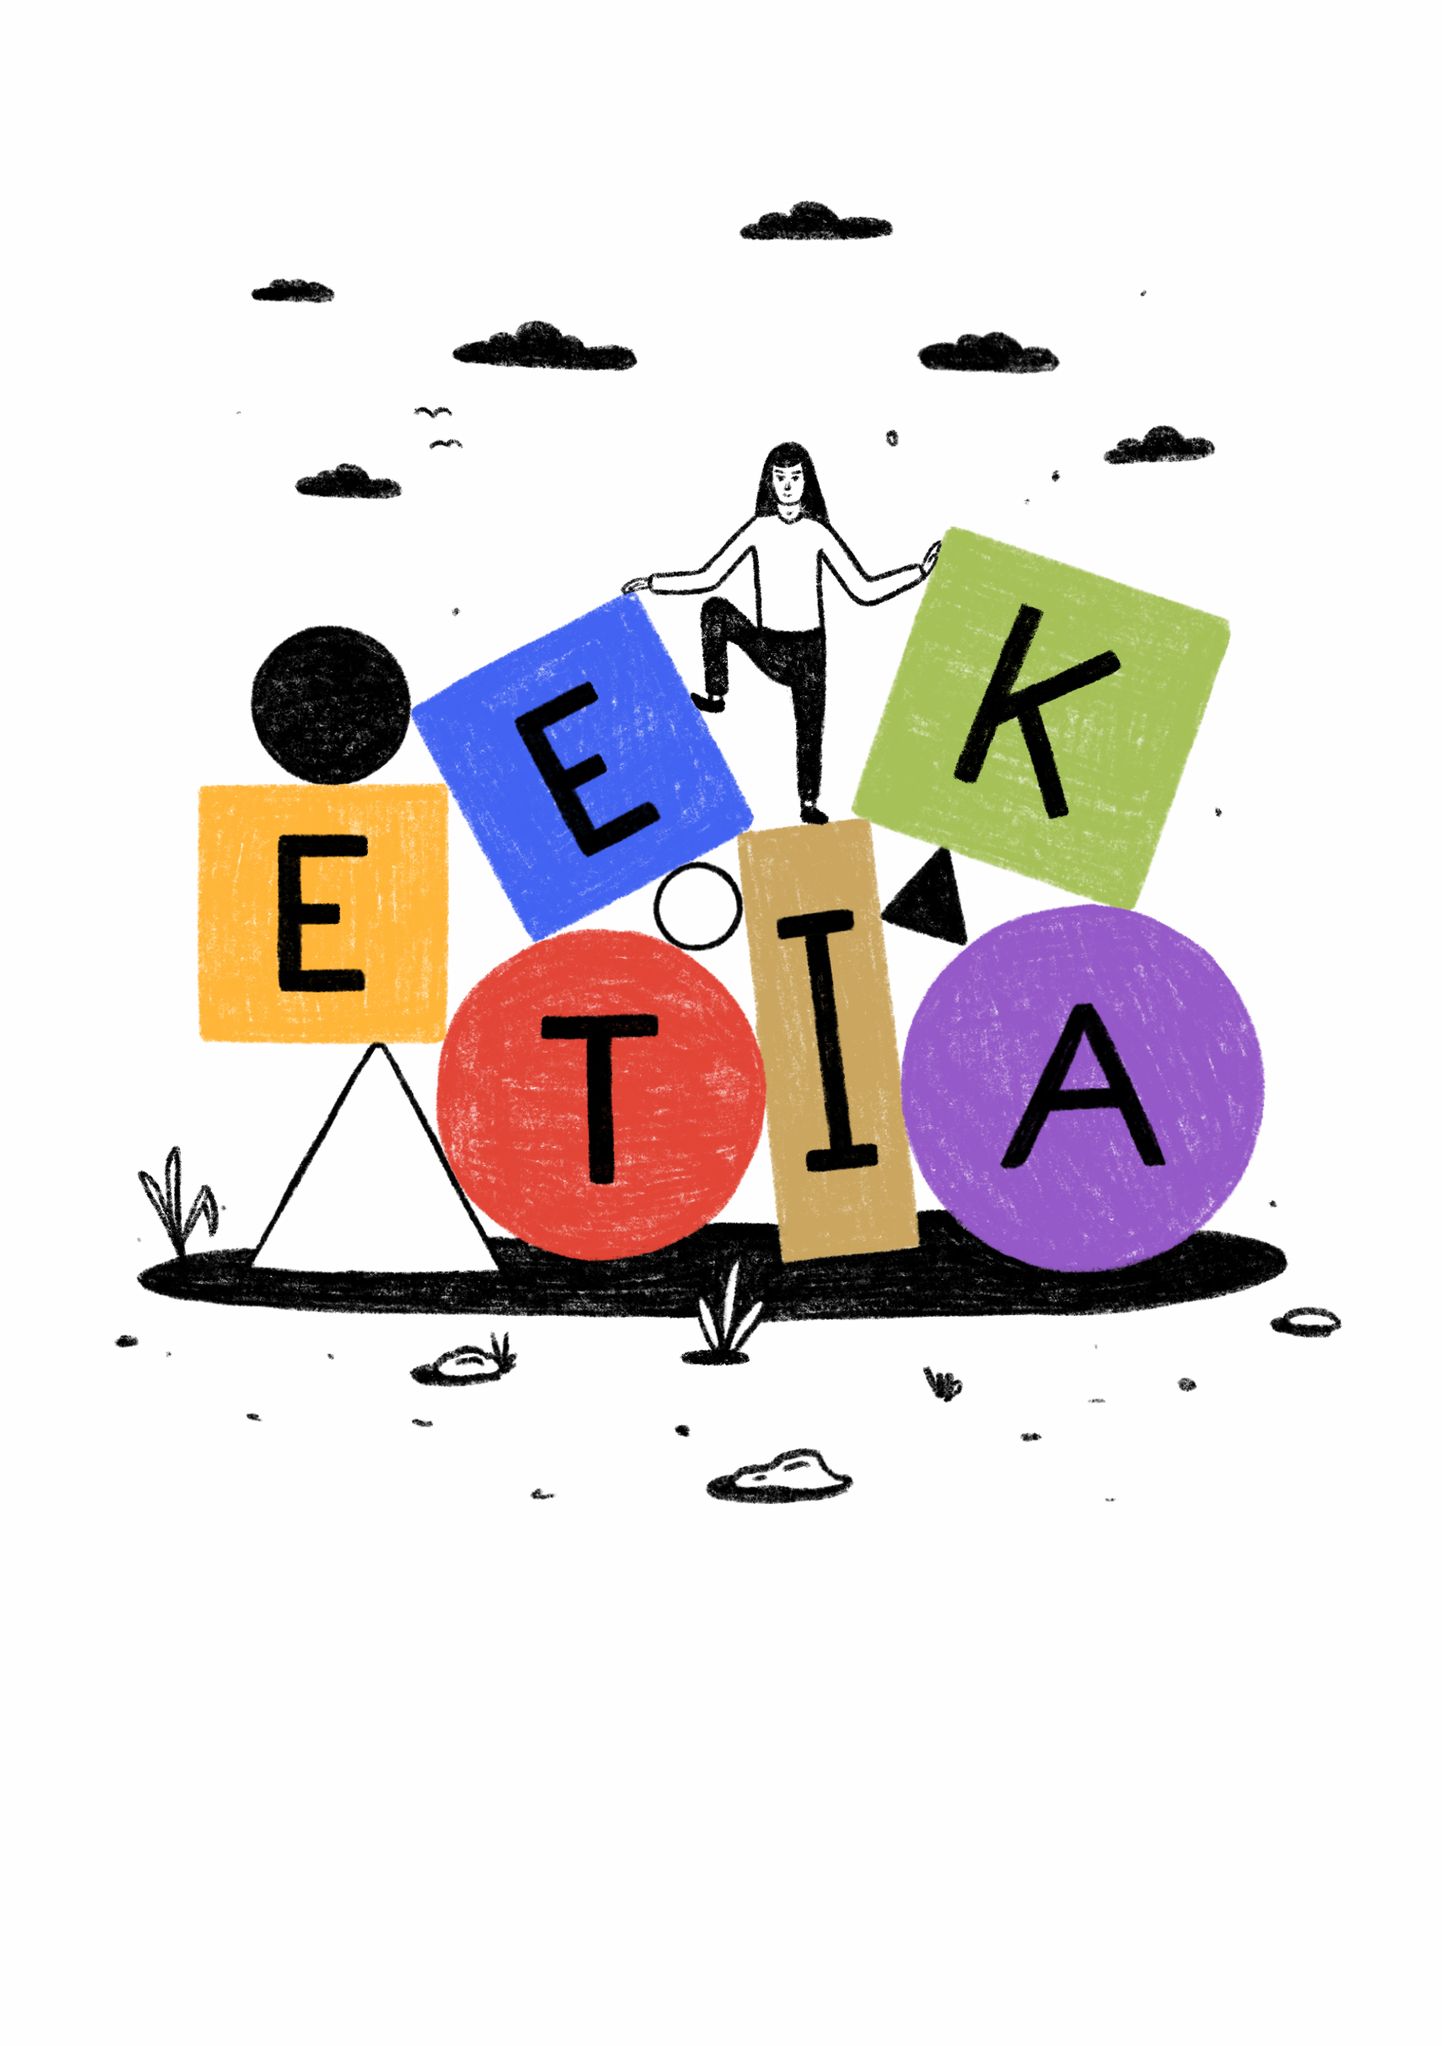 Aasta parim eestikeelne kõrgkooliõpik on «Praktilise eetika käsiraamat»